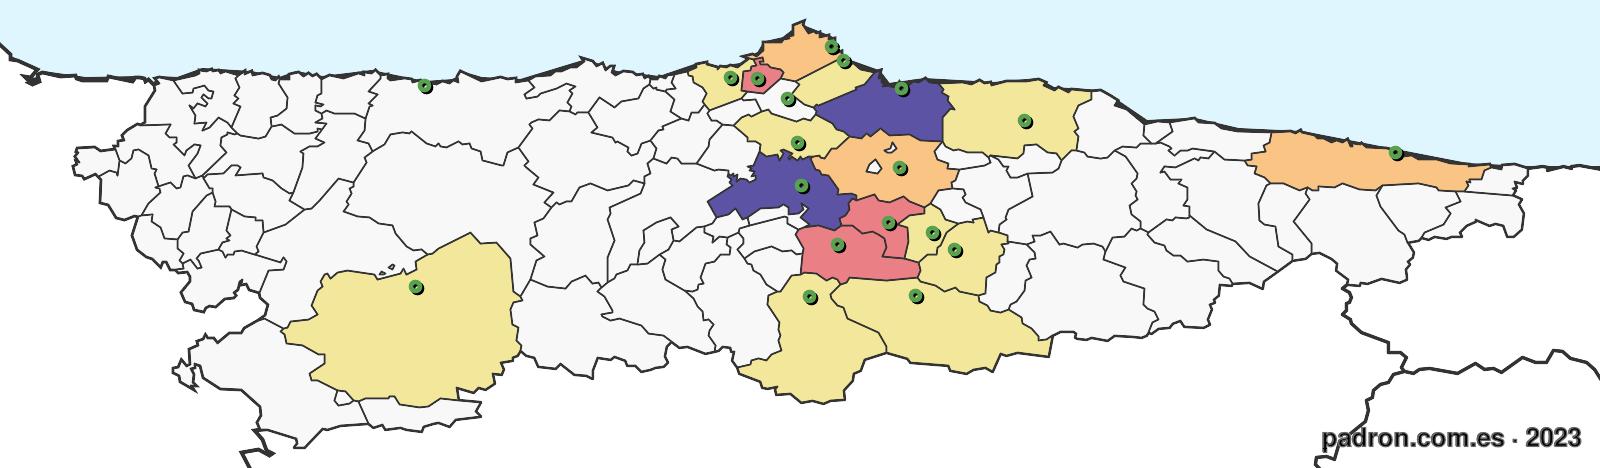 argelinos en asturias.